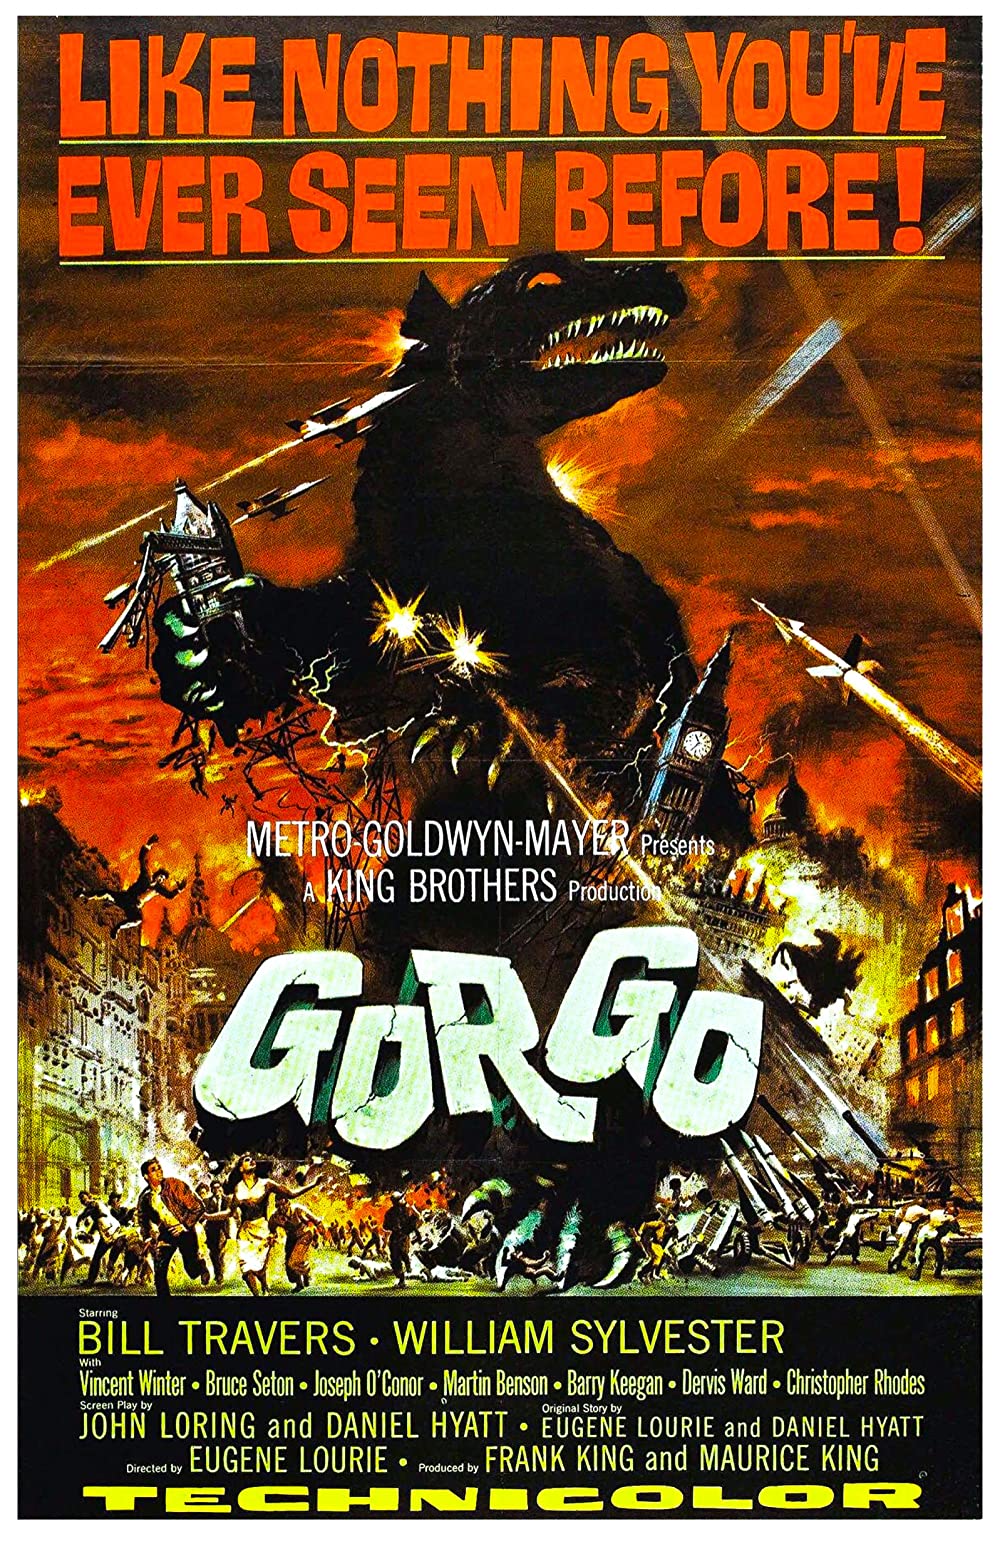 Gorgo Streaming Filme bei cinemaXXL.de